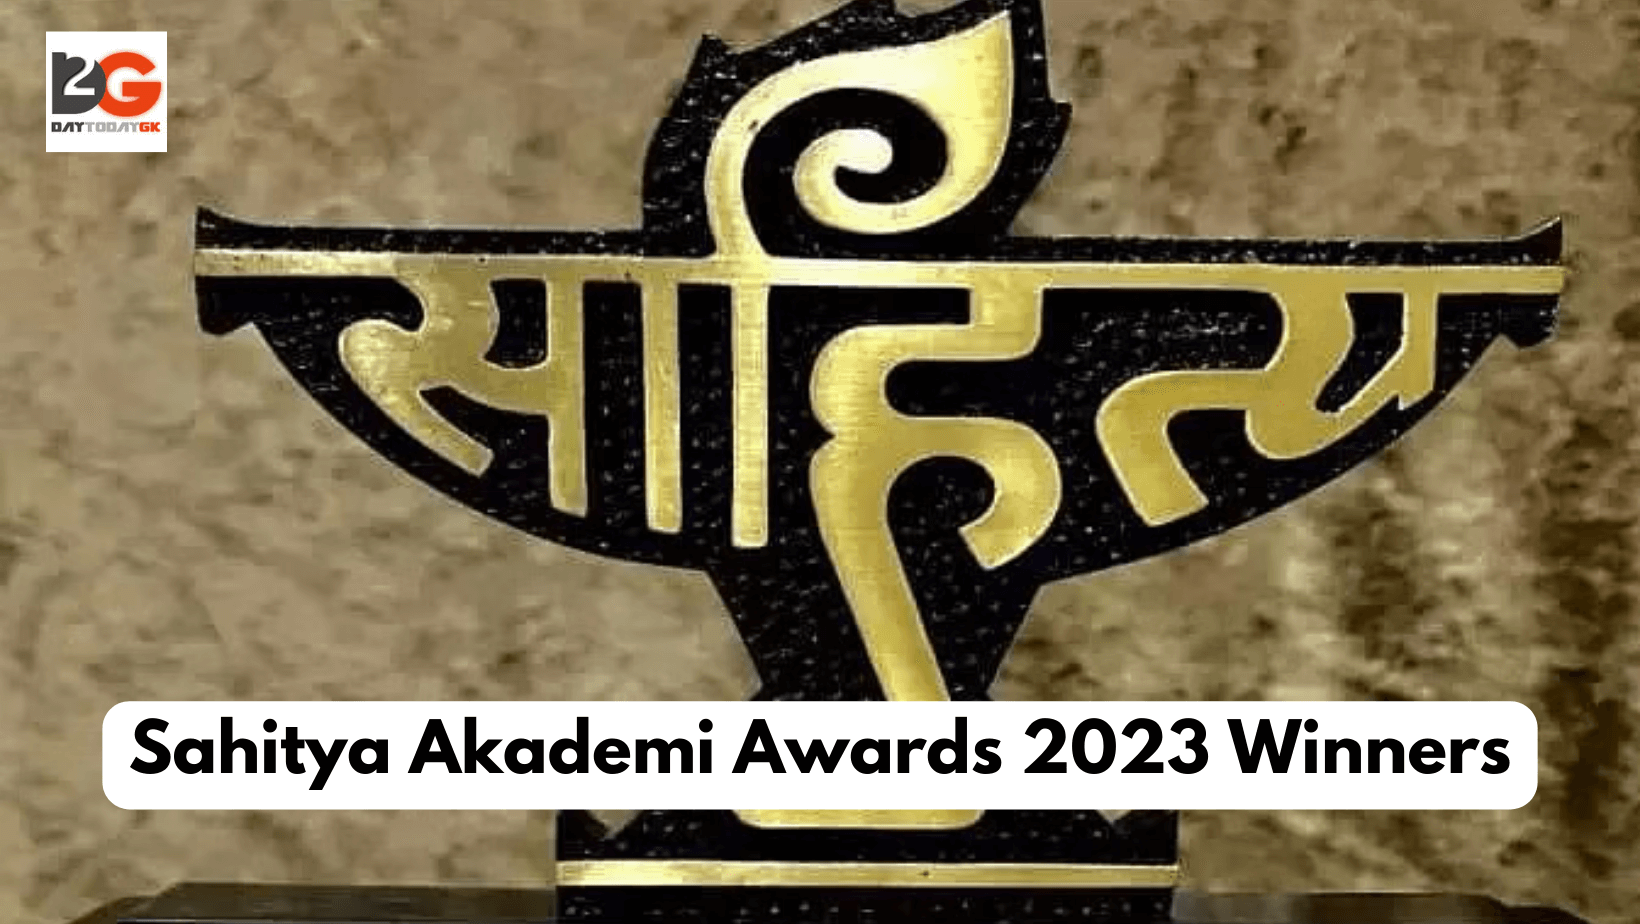 Sahitya Akademi Awards 2023 Winners